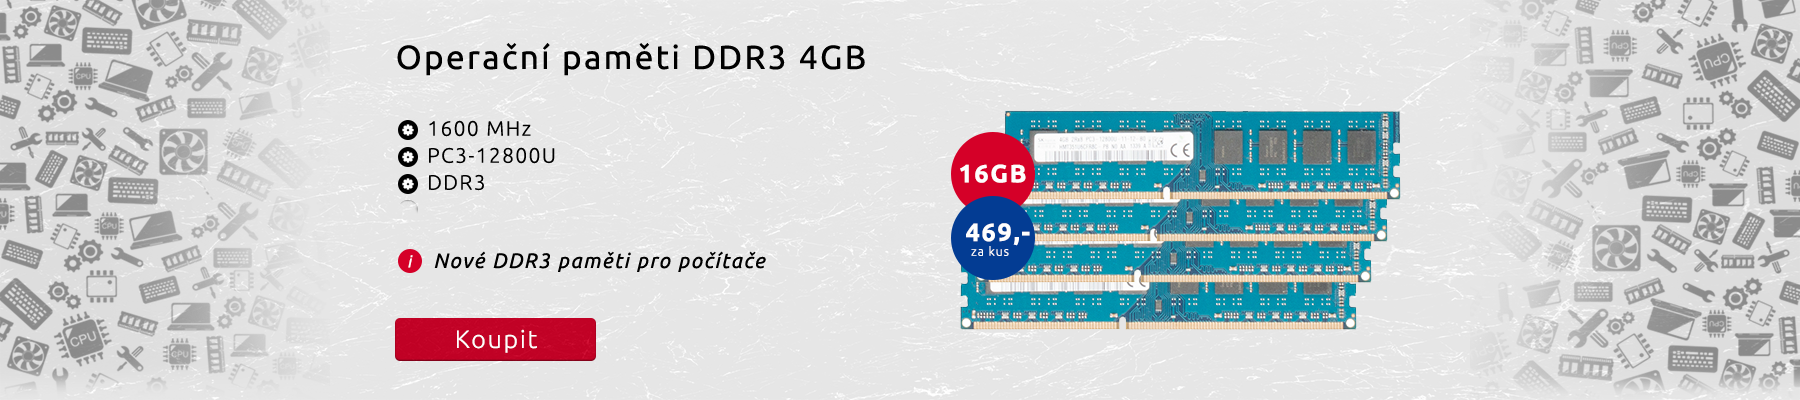 DDR3 paměti pro počítače